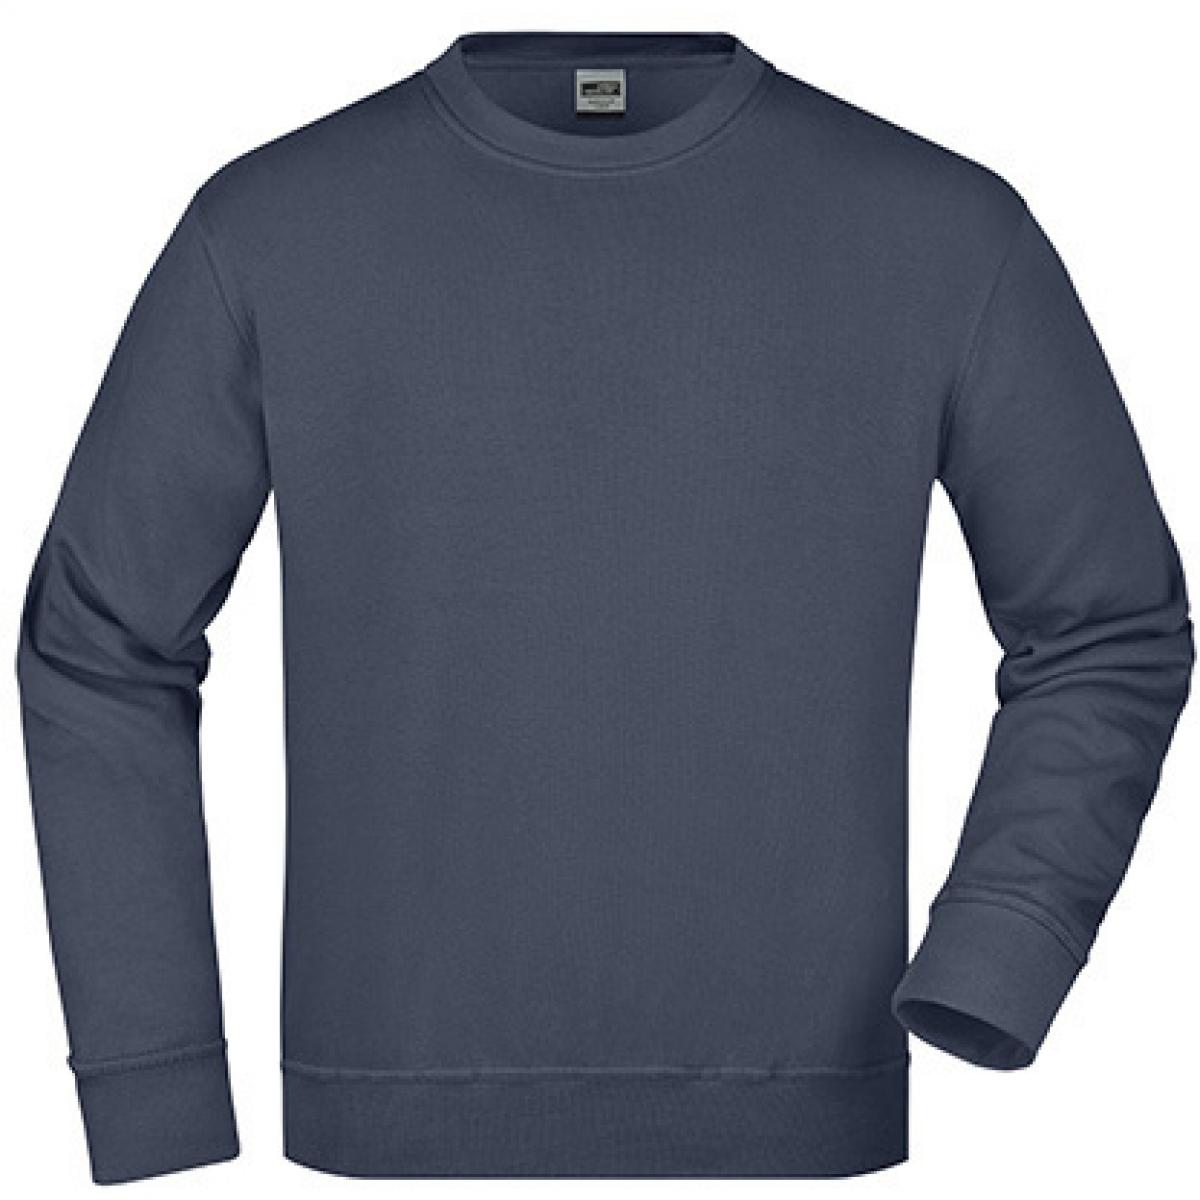 Hersteller: James+Nicholson Herstellernummer: JN840 Artikelbezeichnung: Workwear Sweatshirt / Waschbar bis 60C Farbe: Navy